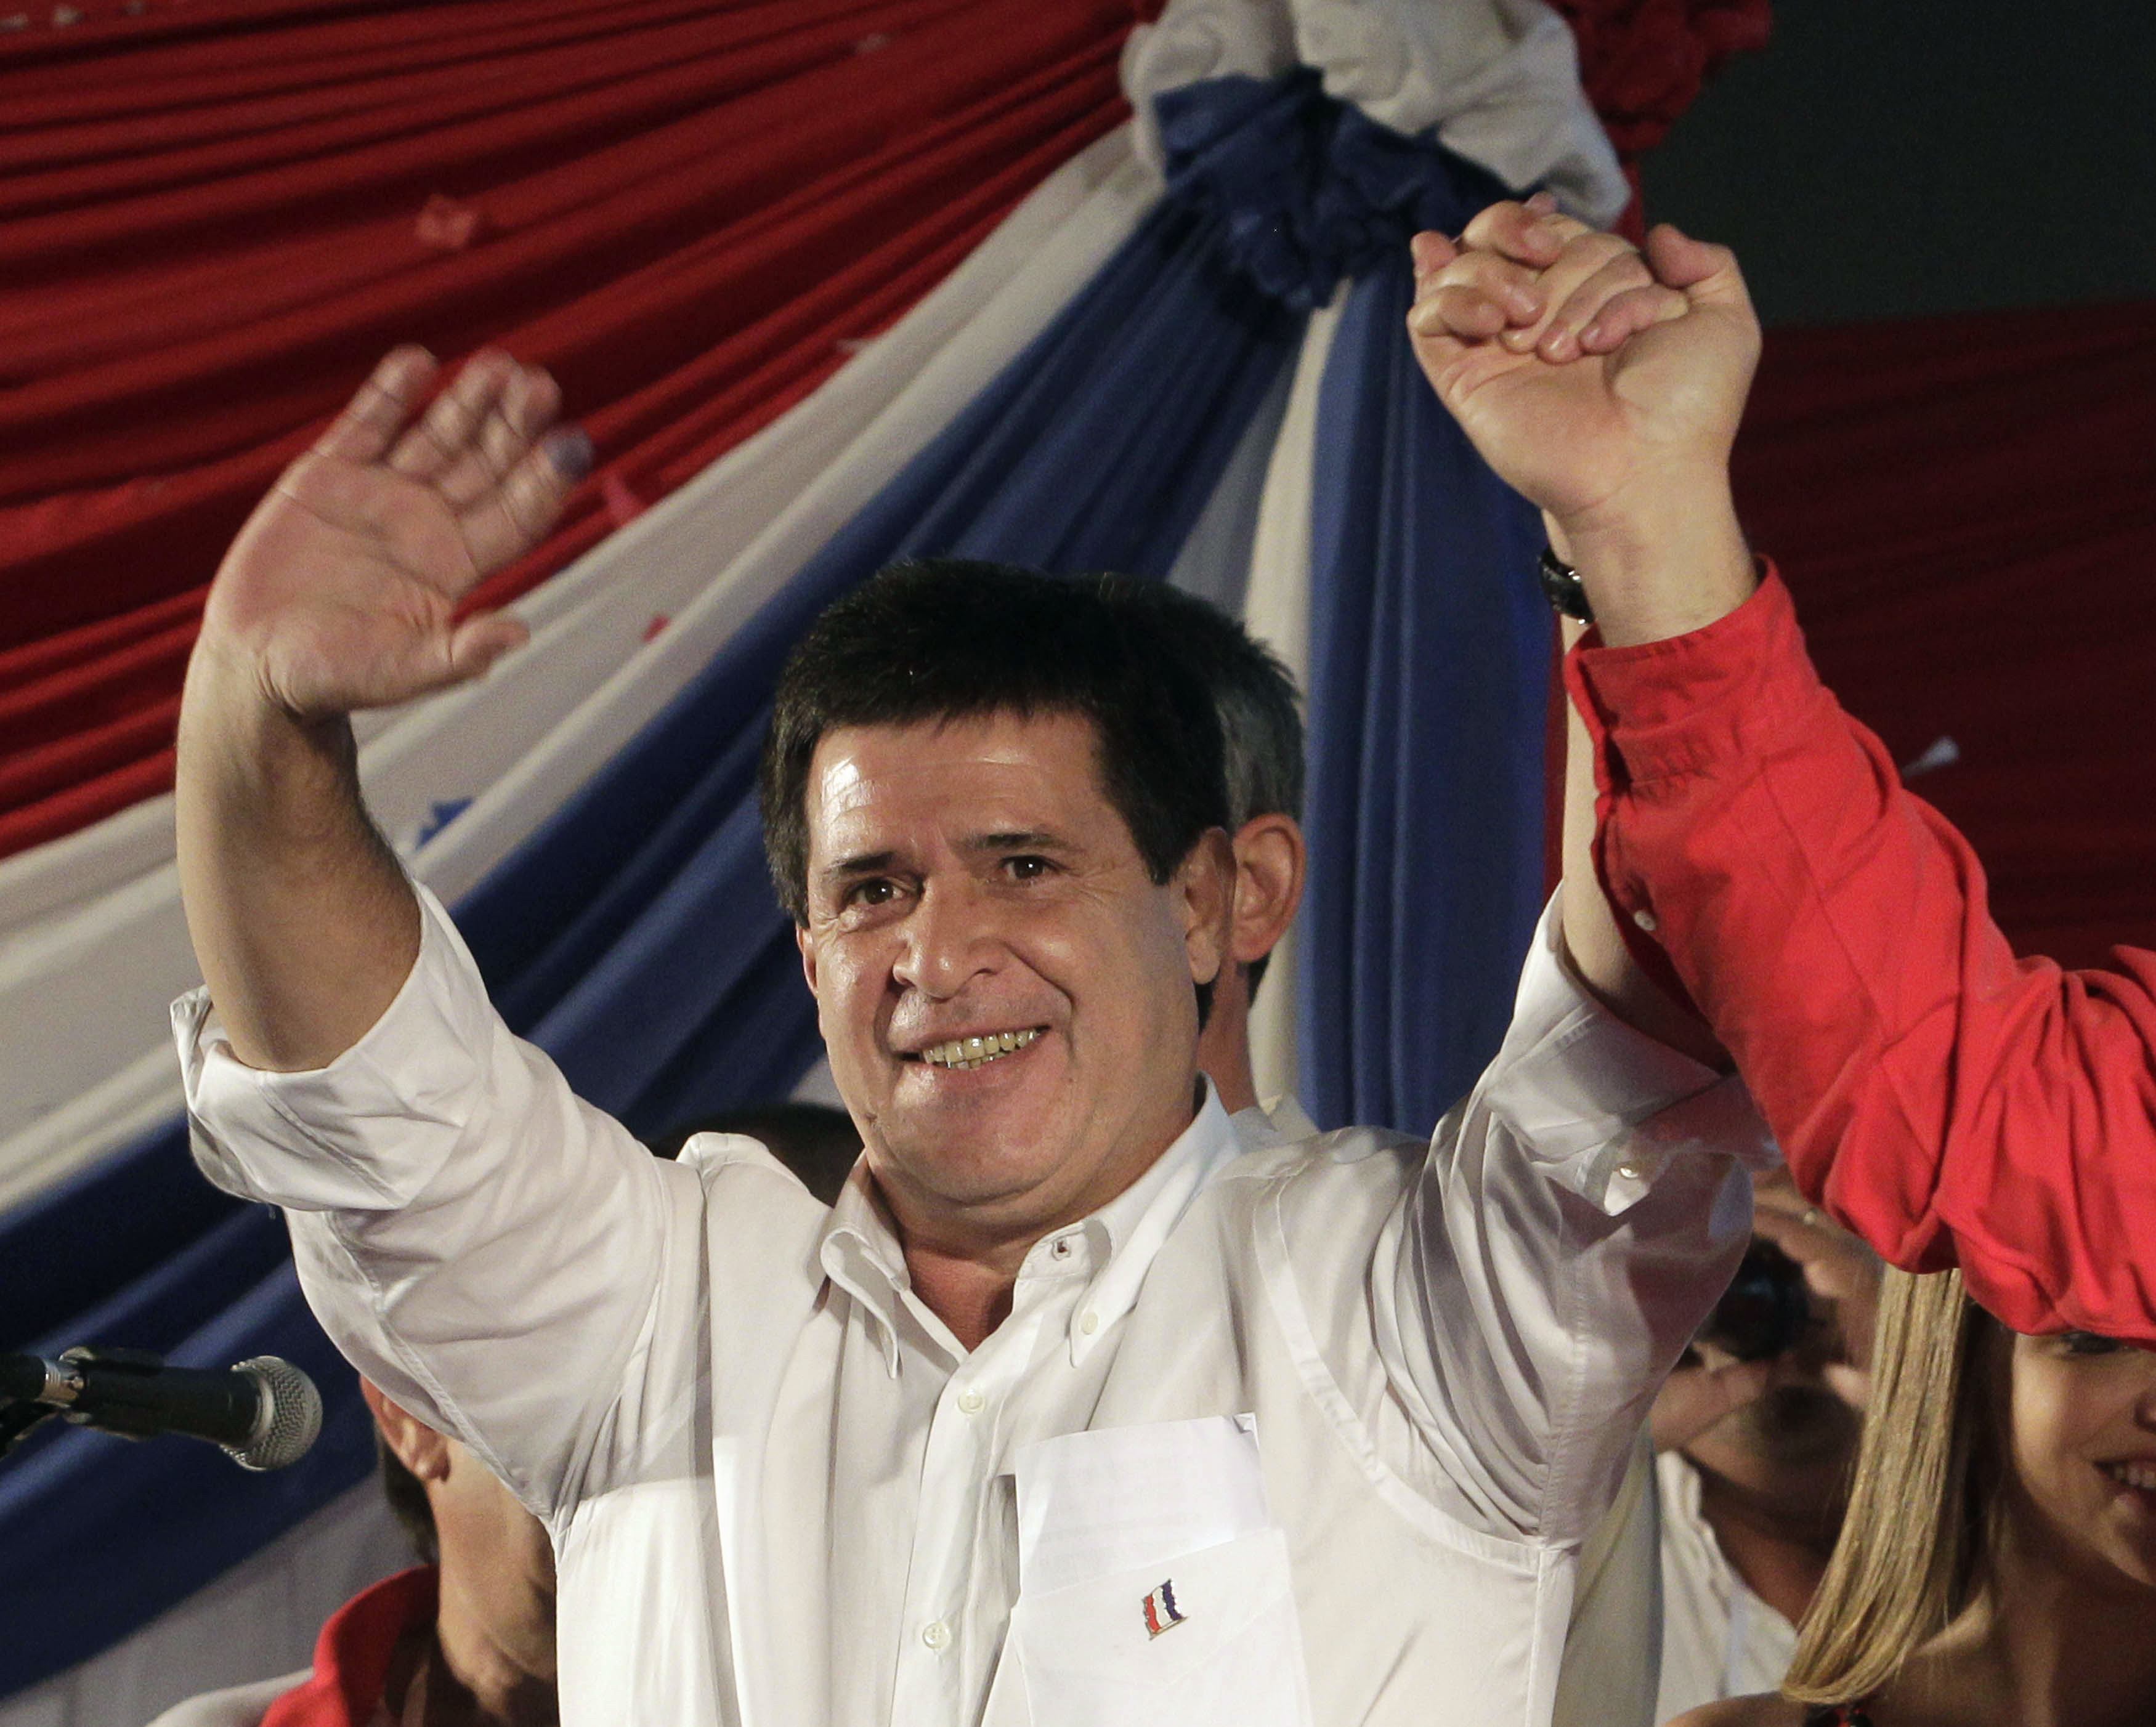 Ingreso de Venezuela a Mercosur no se ajusta al Derecho según presidente paraguayo